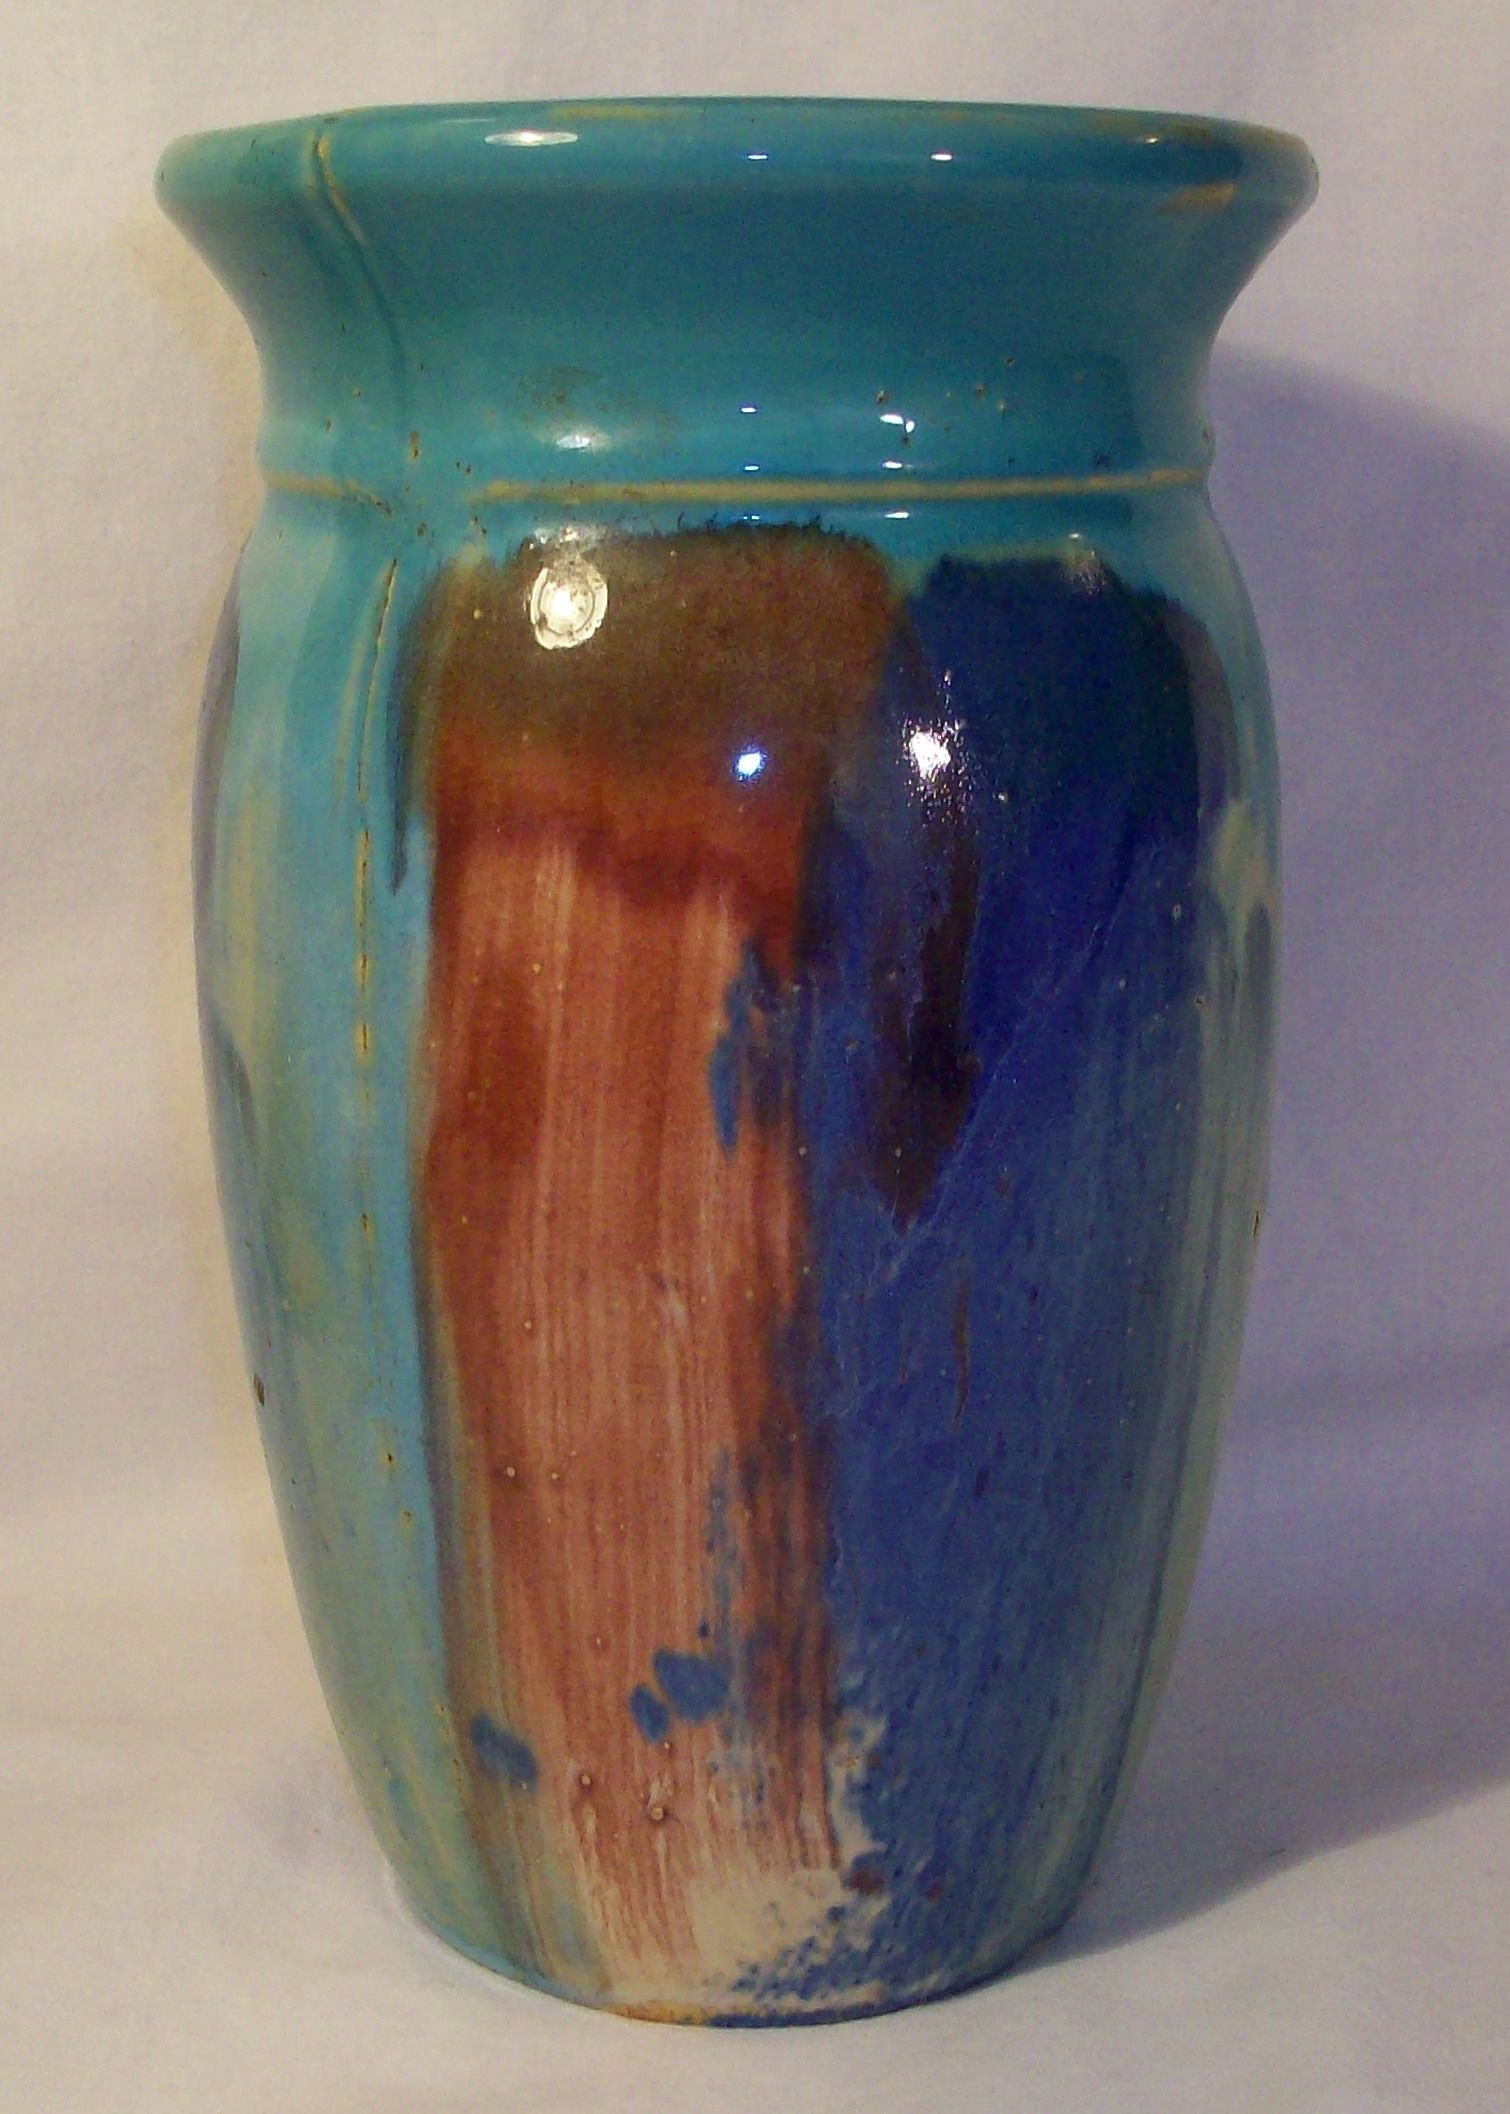 12 Fantastic Large Teal Vase 2024 free download large teal vase of 1920s hull pottery early art large vase vintage pottery from within 1920s hull pottery early art large vase